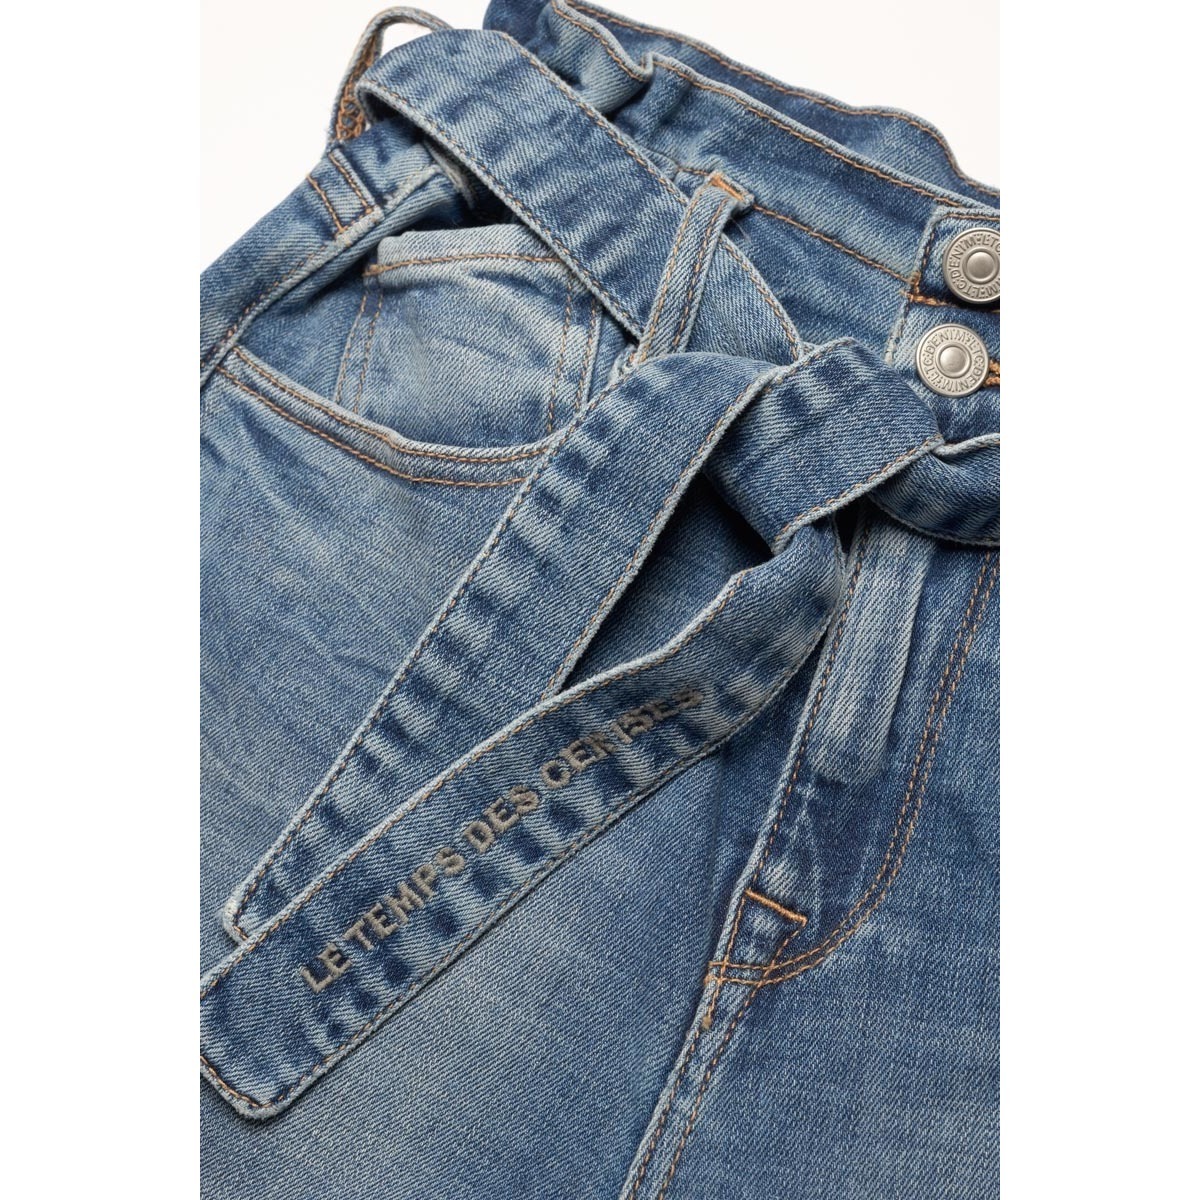 Le Temps des Cerises Bleu Milina boyfit jeans vintage bleu BLN6NRiF